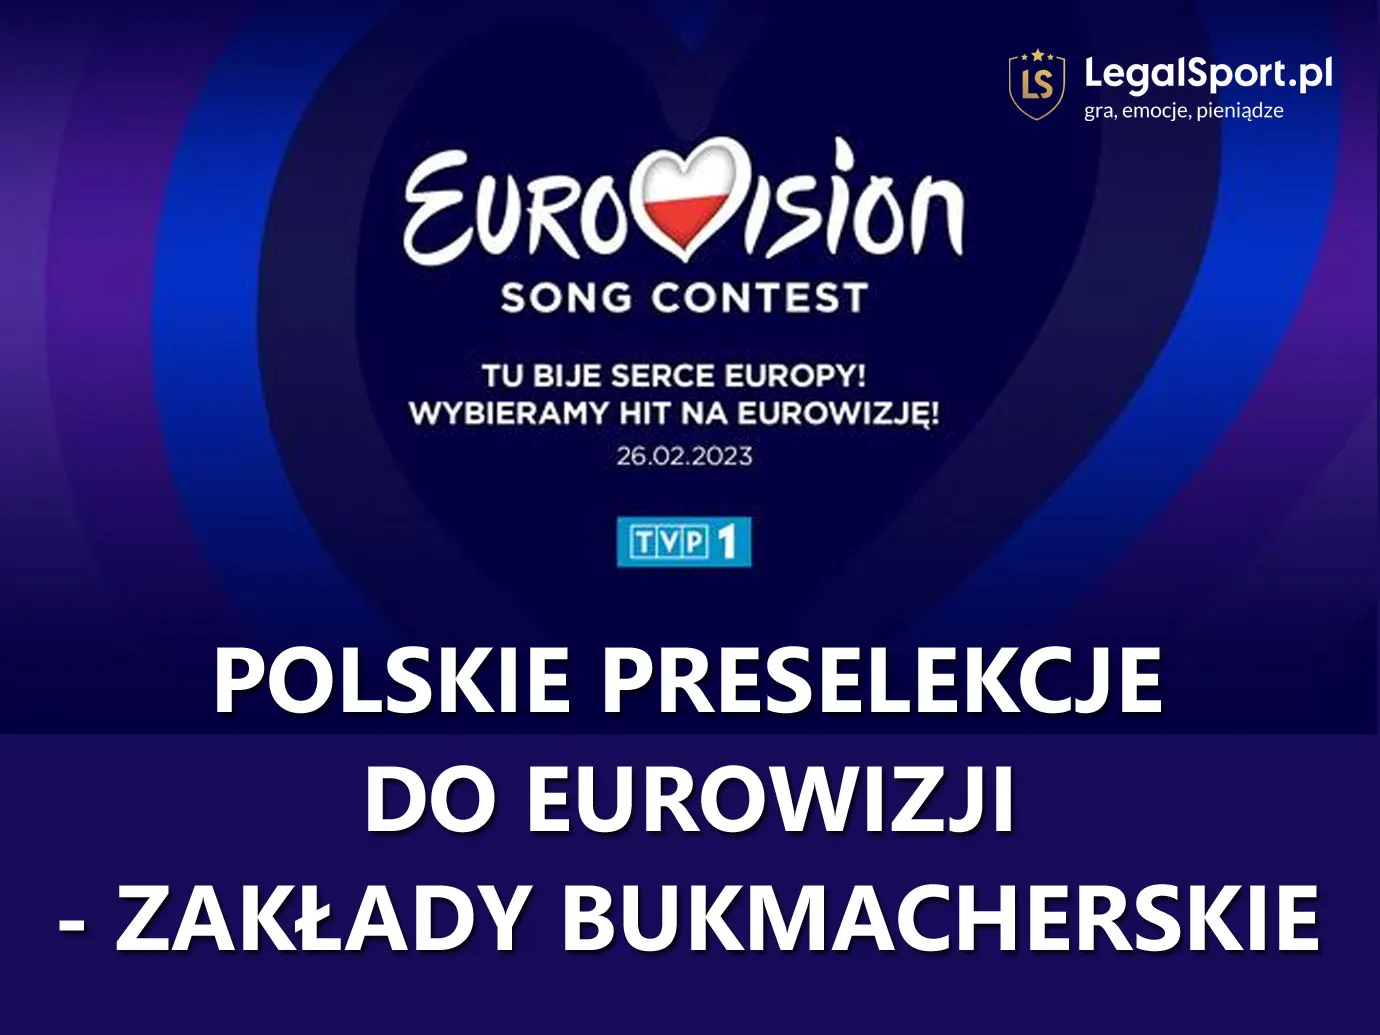 Polskie preselekcje do Eurowizji 2023 - zakłady bukmacherskie